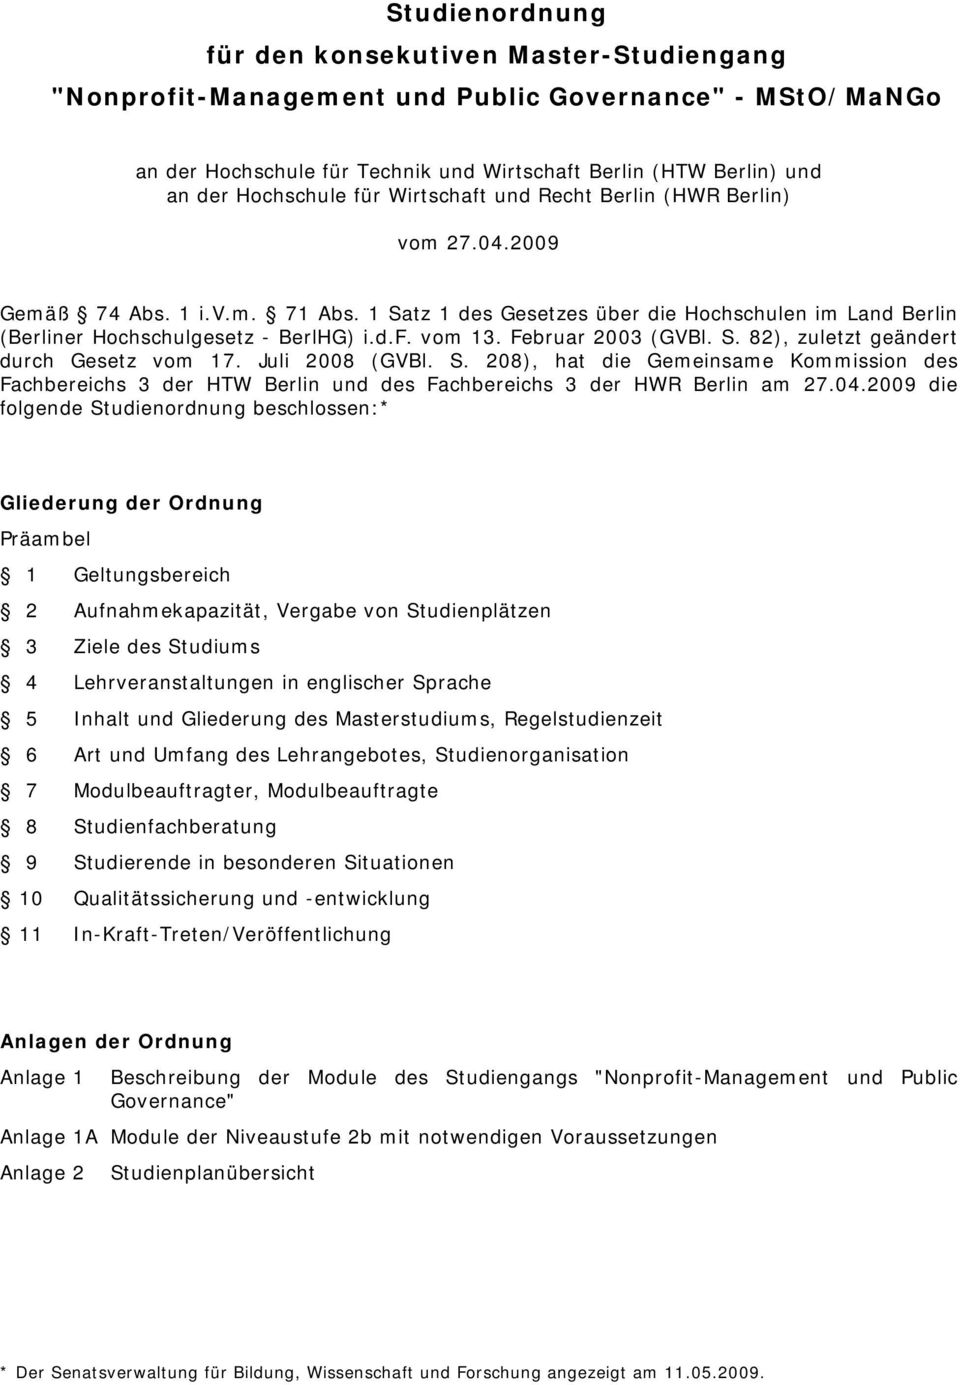 Februar 2003 (GVBl. S. 82), zuletzt geändert durch Gesetz vom 17. Juli 2008 (GVBl. S. 208), hat die Gemeinsame Kommission des Fachbereichs 3 der HTW Berlin und des Fachbereichs 3 der HWR Berlin am 27.